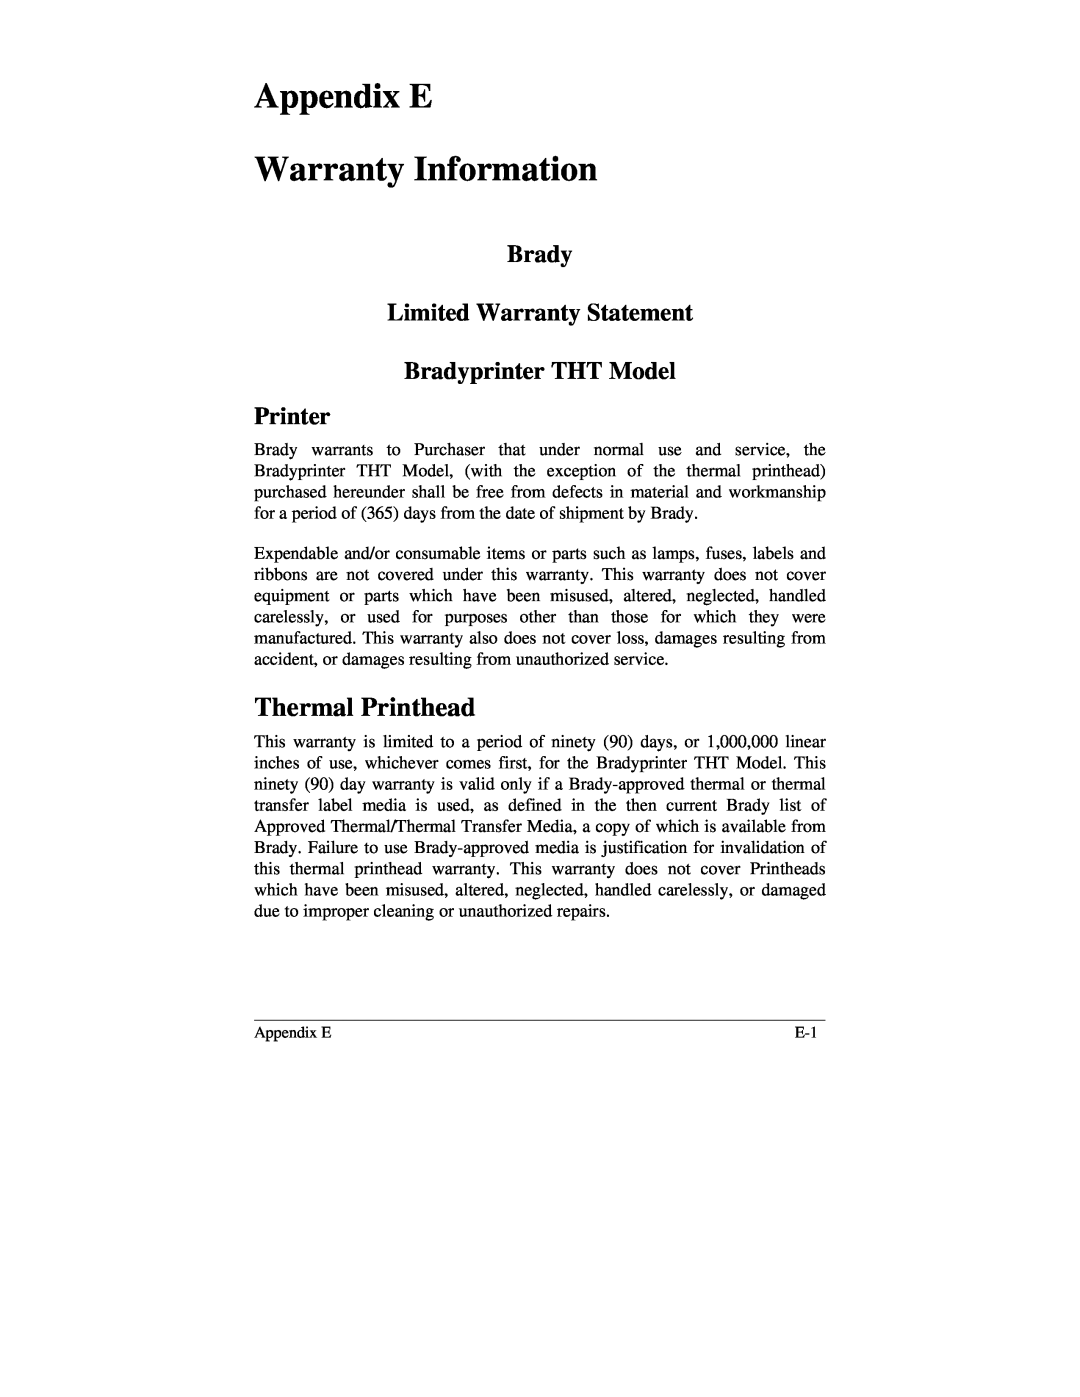 Brady 2034, 2024 manual Appendix E Warranty Information, Thermal Printhead 